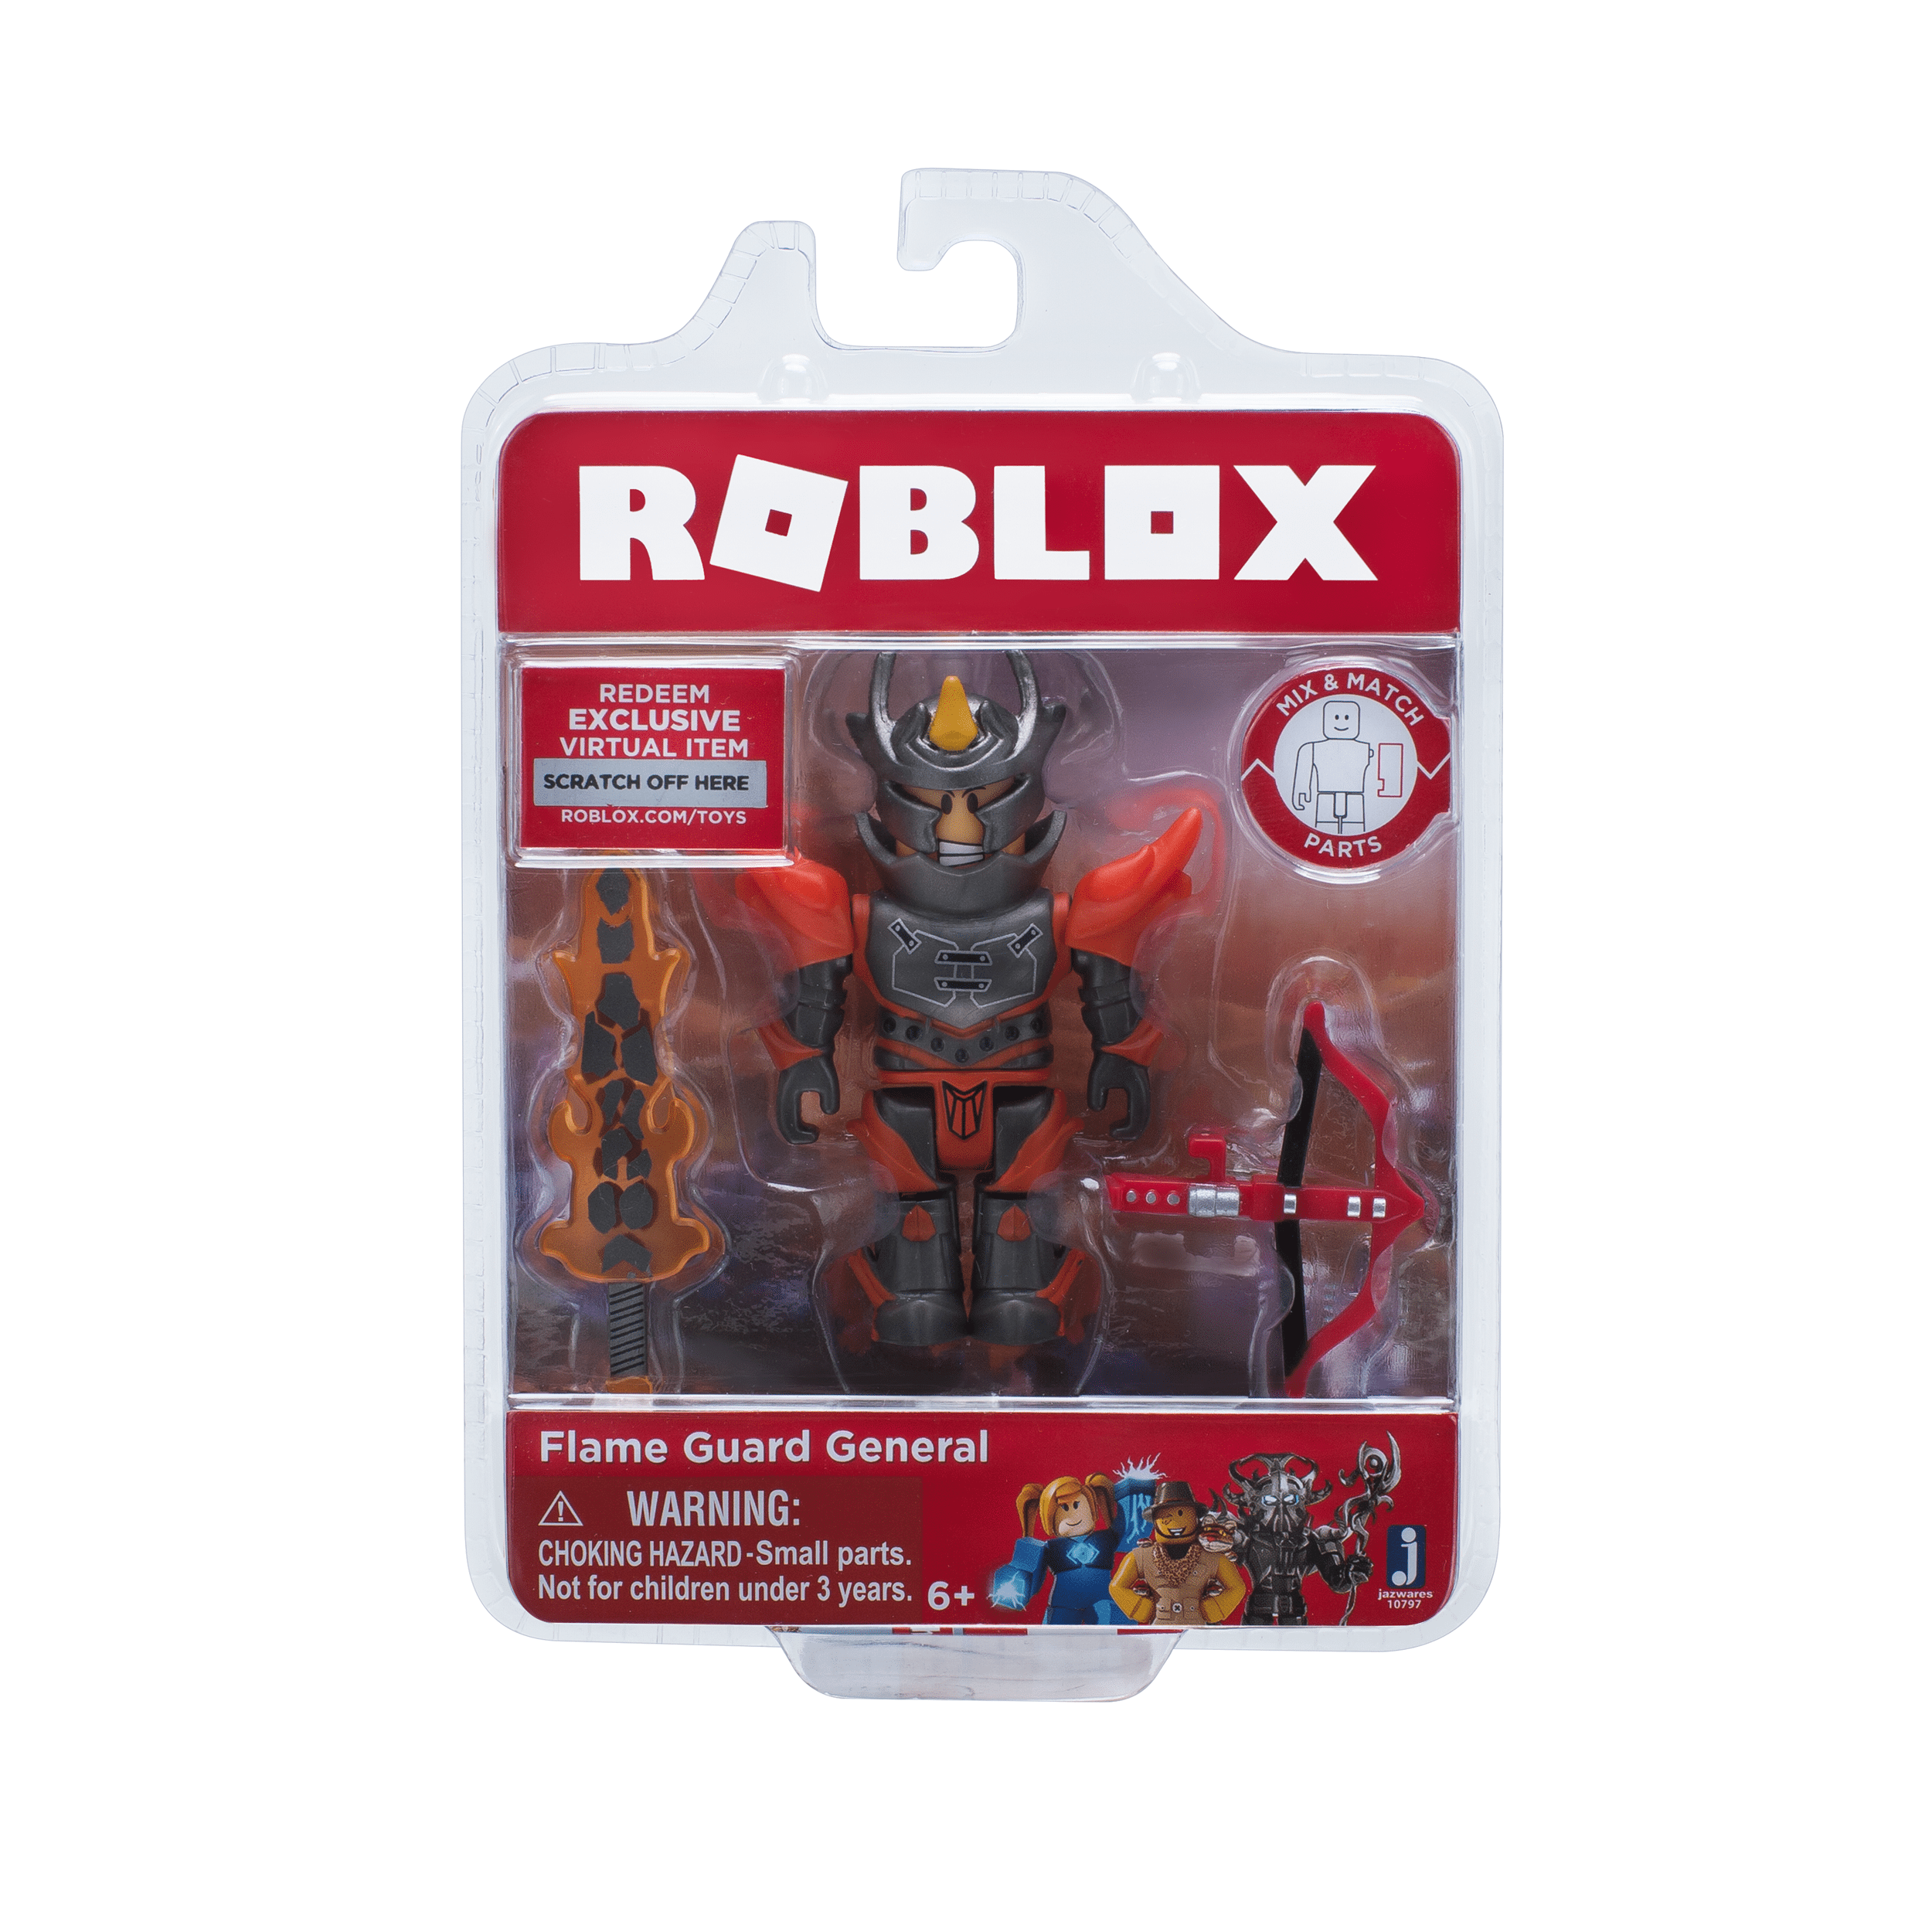 Roblox Flame Guard General Figure Assortment Walmart Com Walmart Com - icy cup roblox